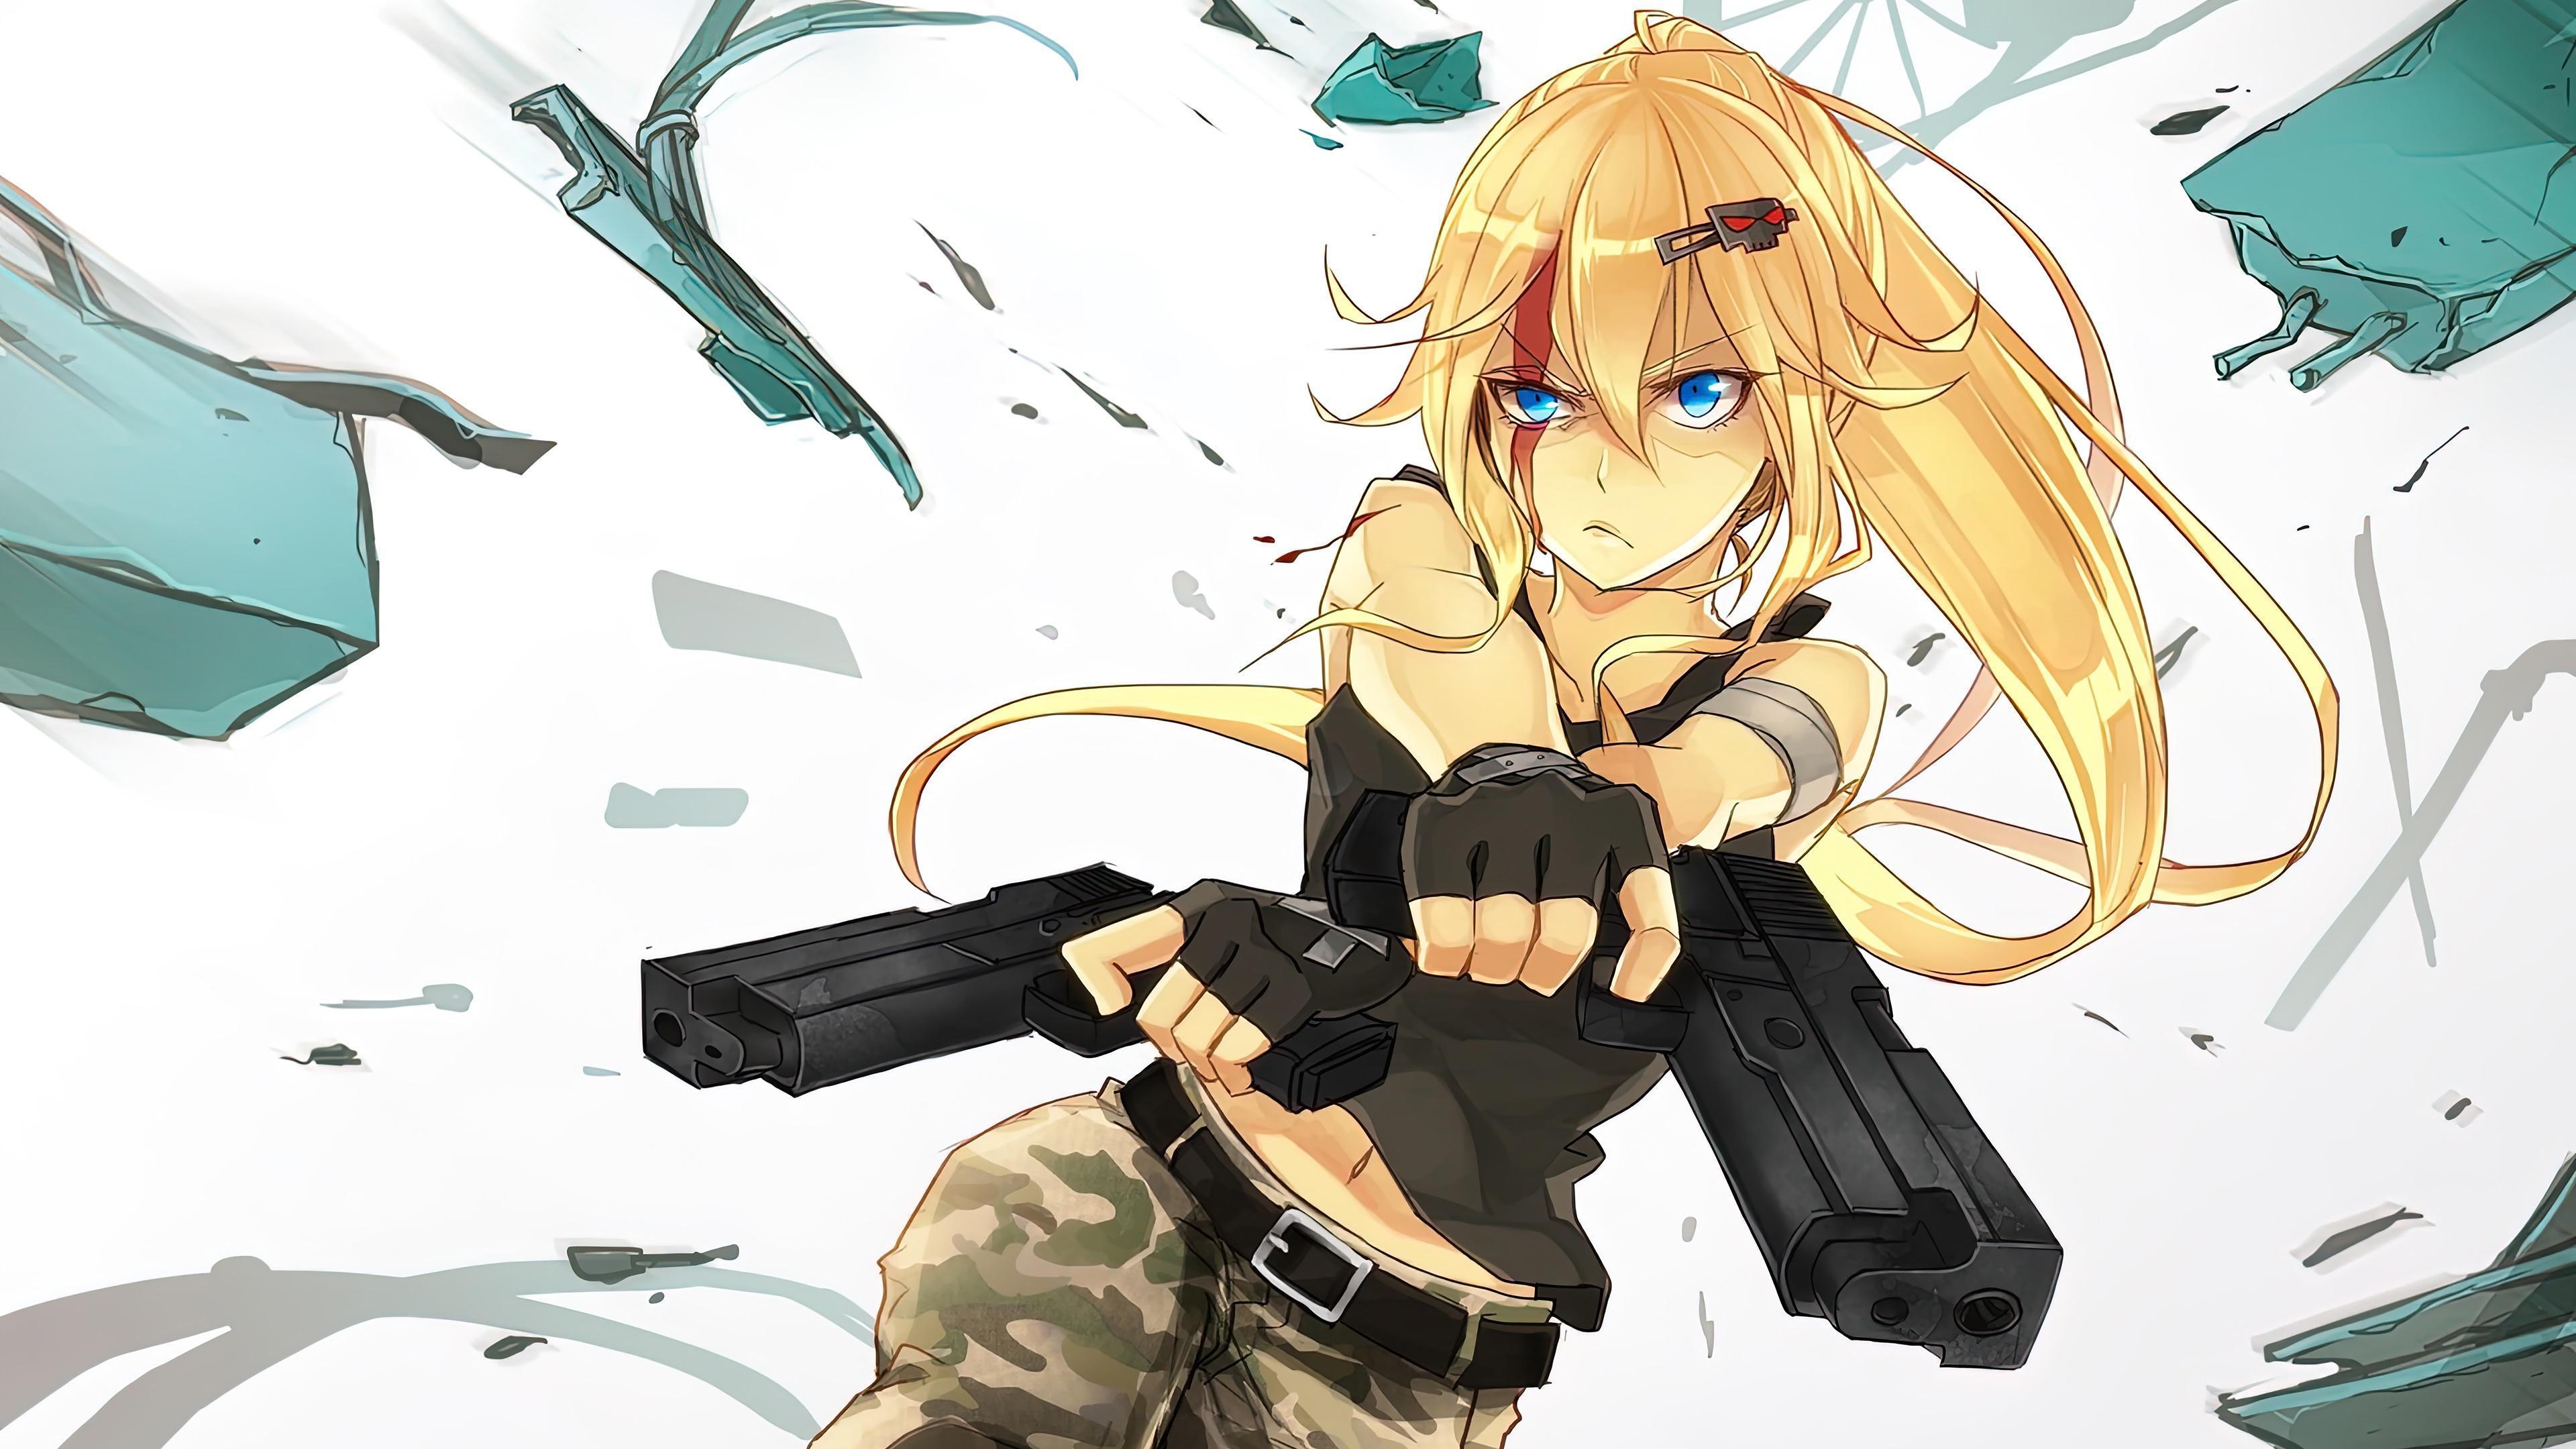 HD wallpaper, Girl, Soldier, Hd, Wallpaper, Guns, Anime, 4K, Army